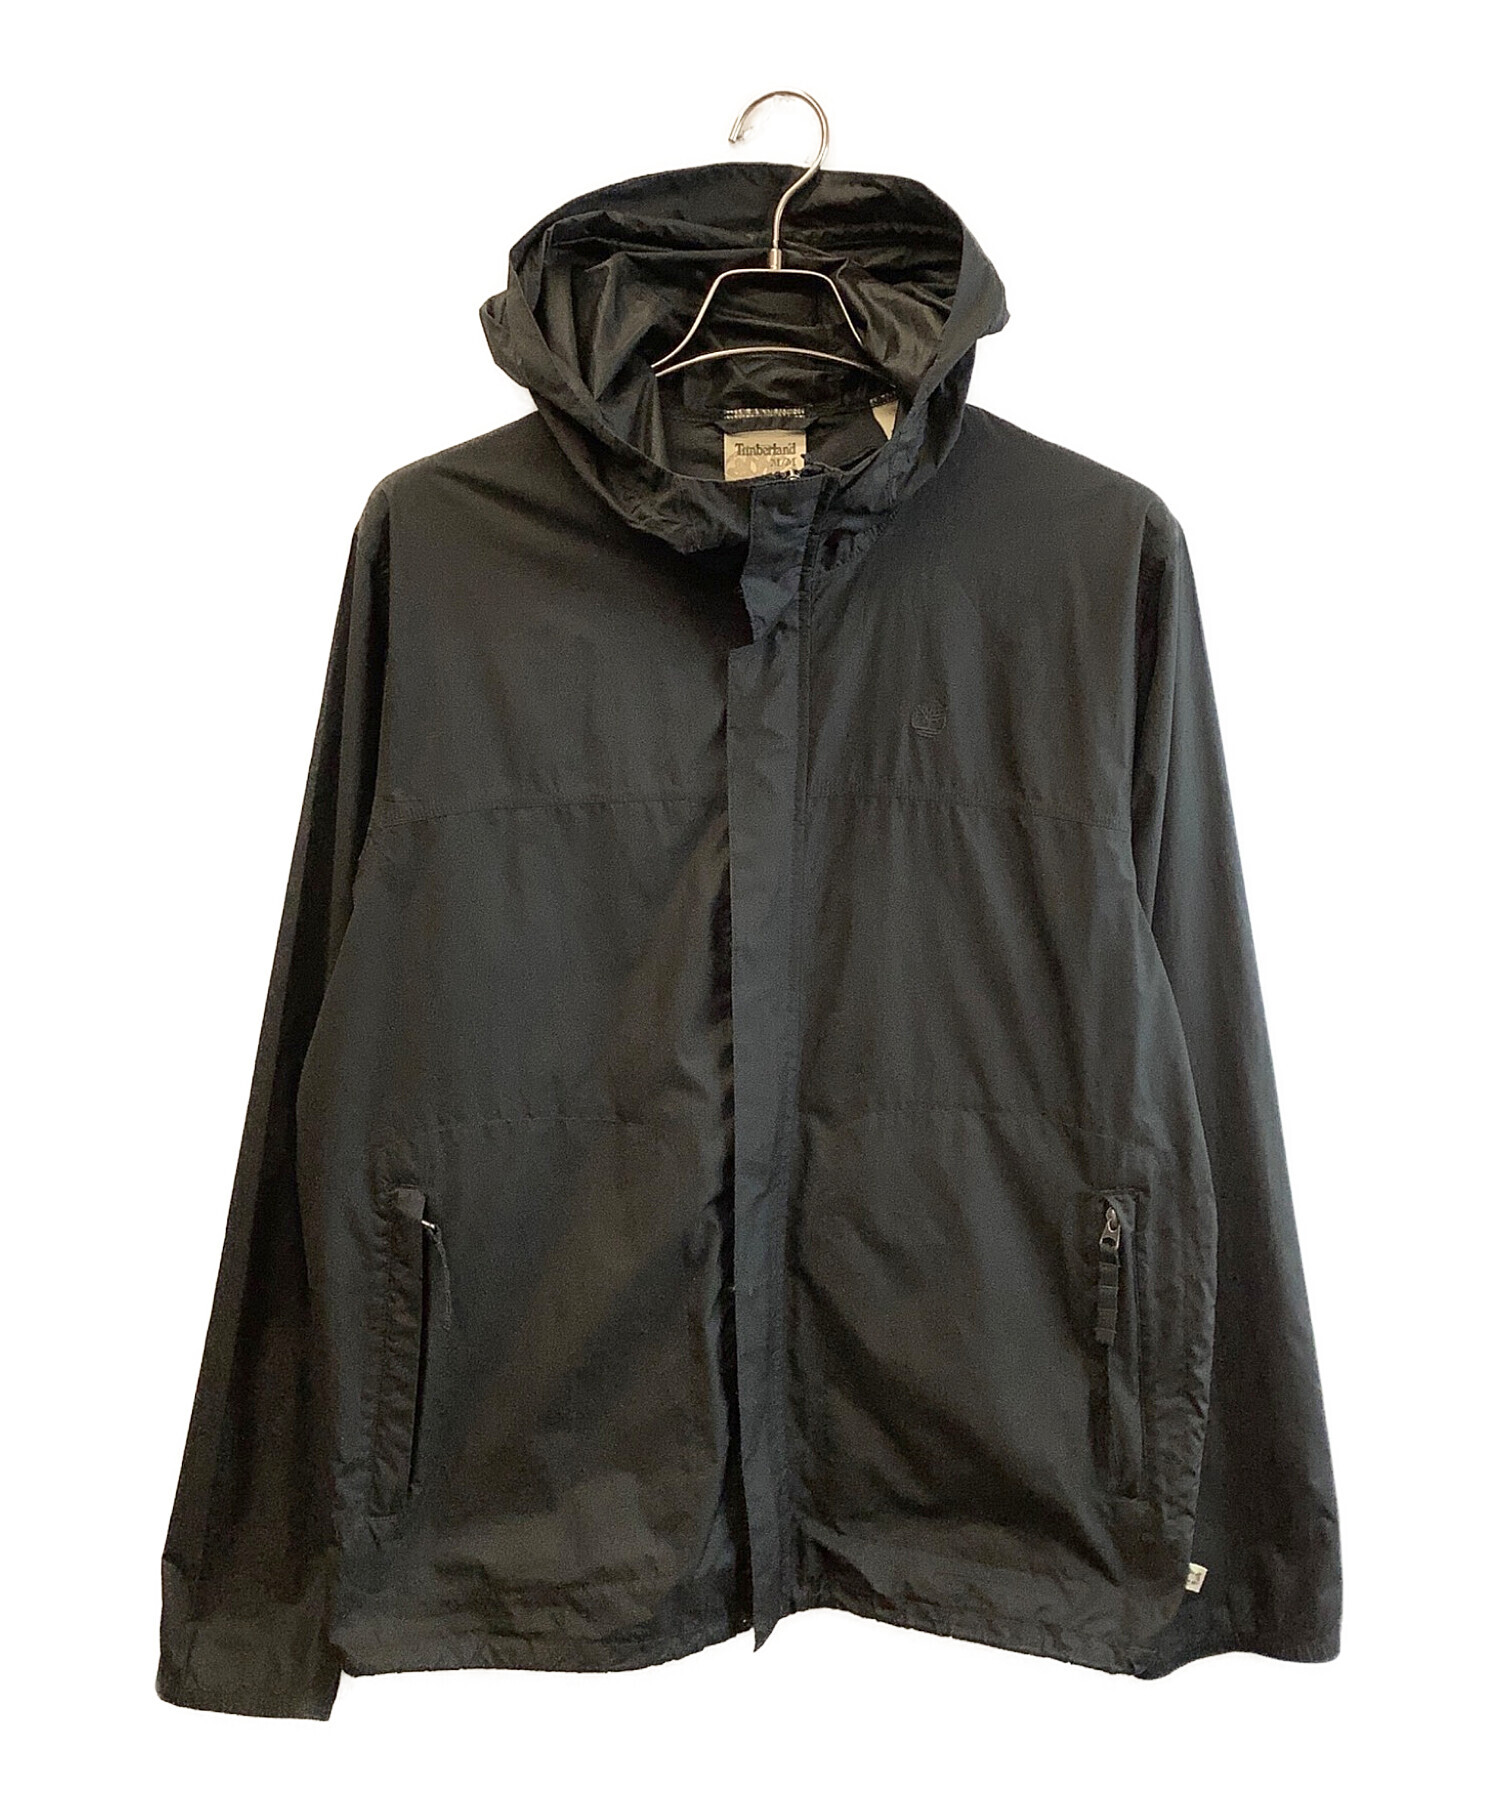 Timberland (ティンバーランド) ナイロンジャケット ブラック サイズ:M